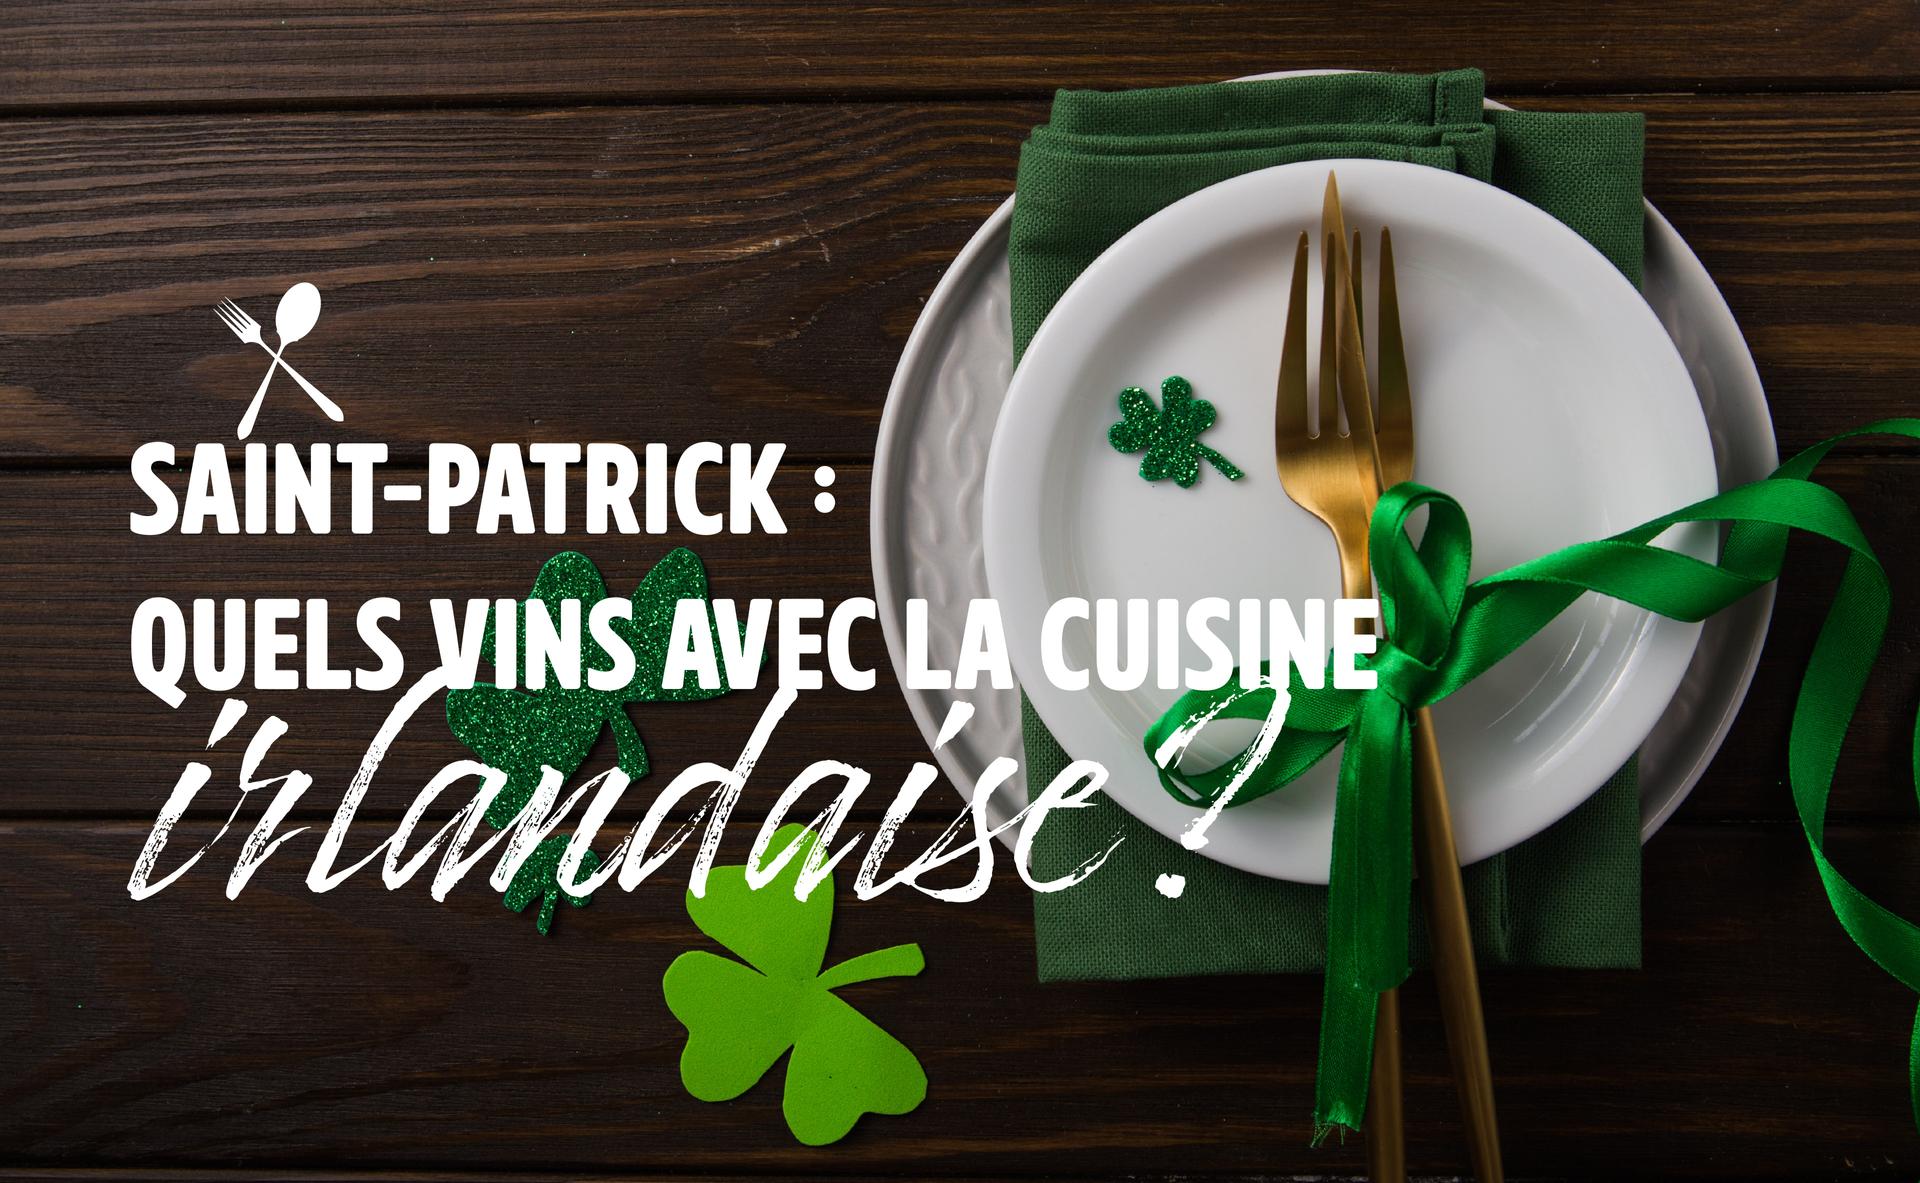 Saint Patrick : quels vins avec la cuisine irlandaise ?